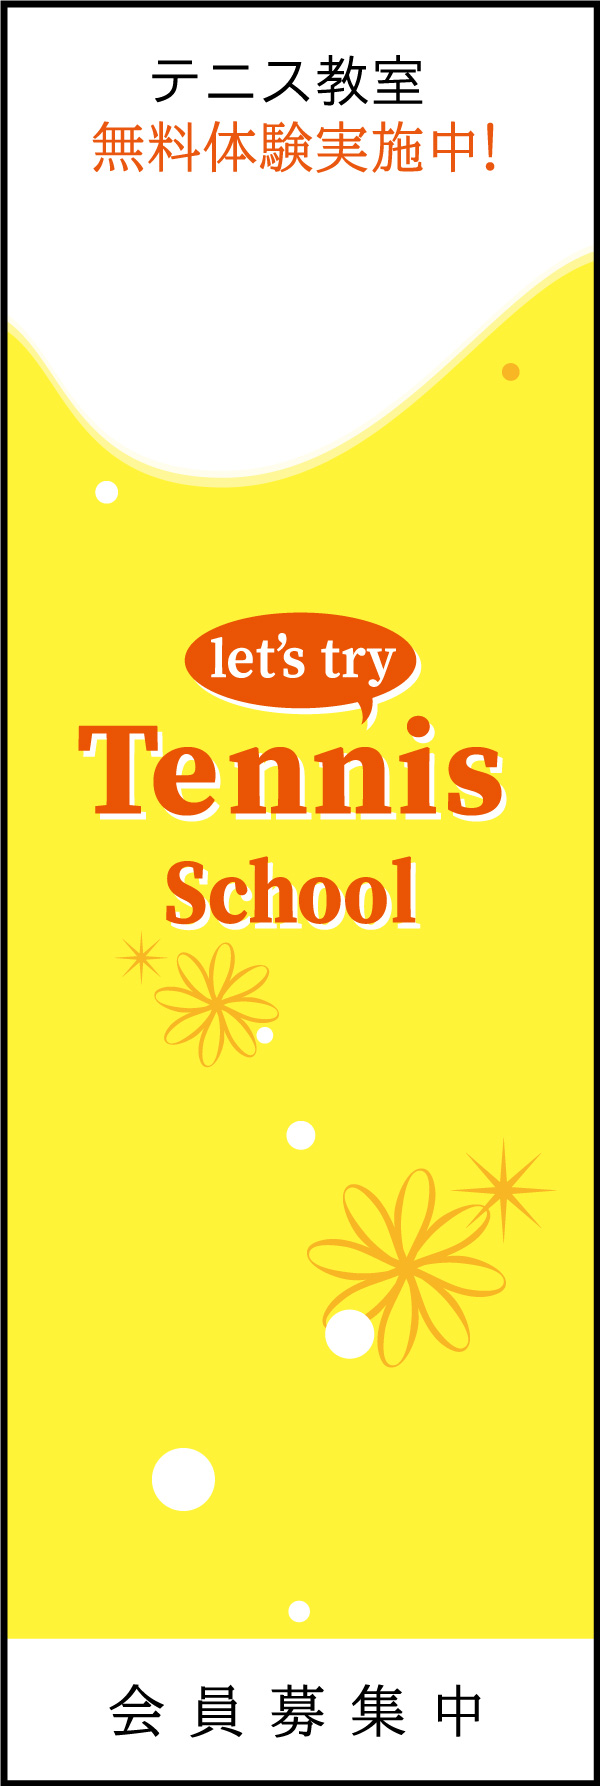 テニススクール 03「テニススクール」ののぼりです。シンプルで品のあるデザインにしました。(Y.M) 